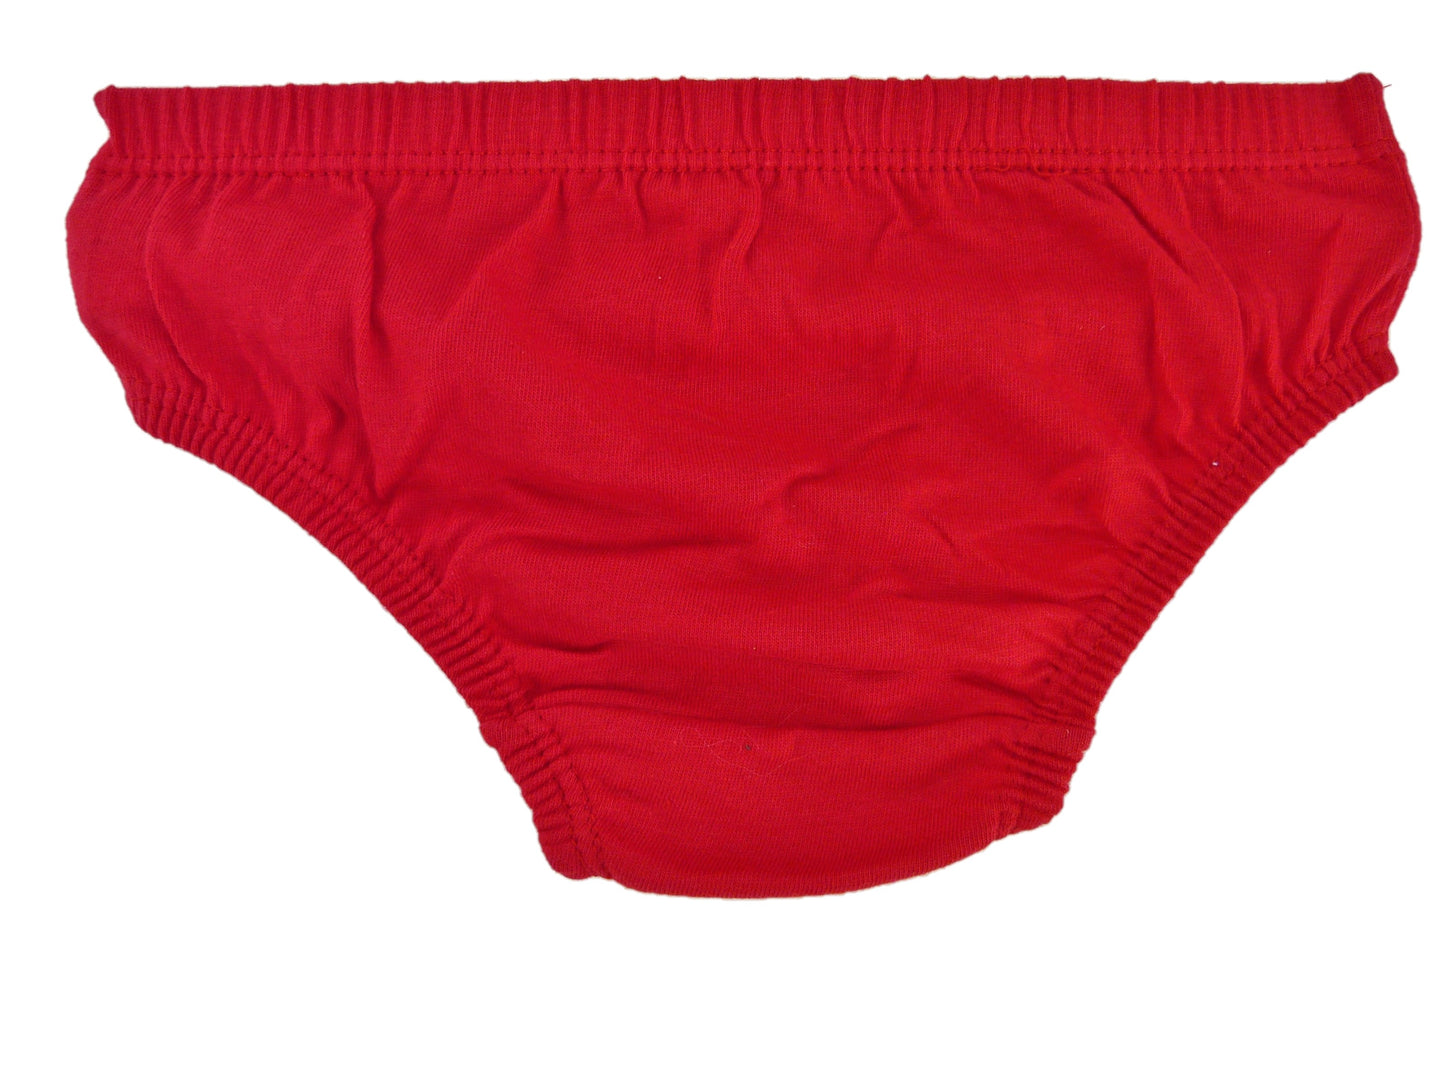 PJ Masks Boys 3 Pack Cotton Underwear Briefs